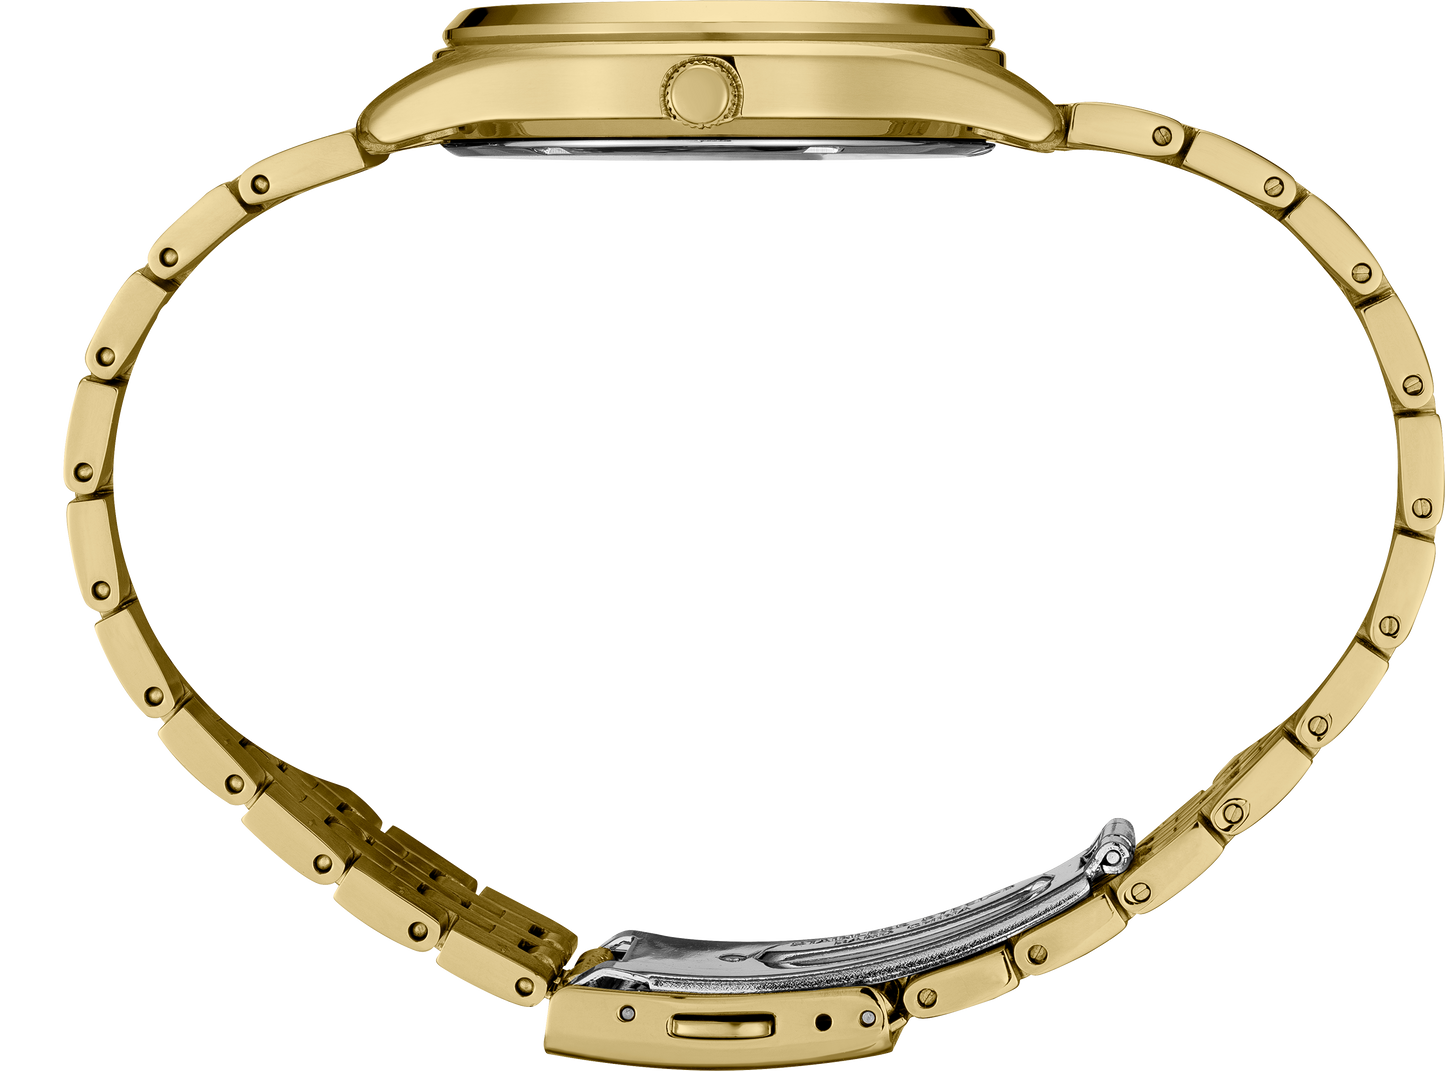 Seiko Essentials Mens Gold Tone Stainless Steel Bracelet Watch SUR434